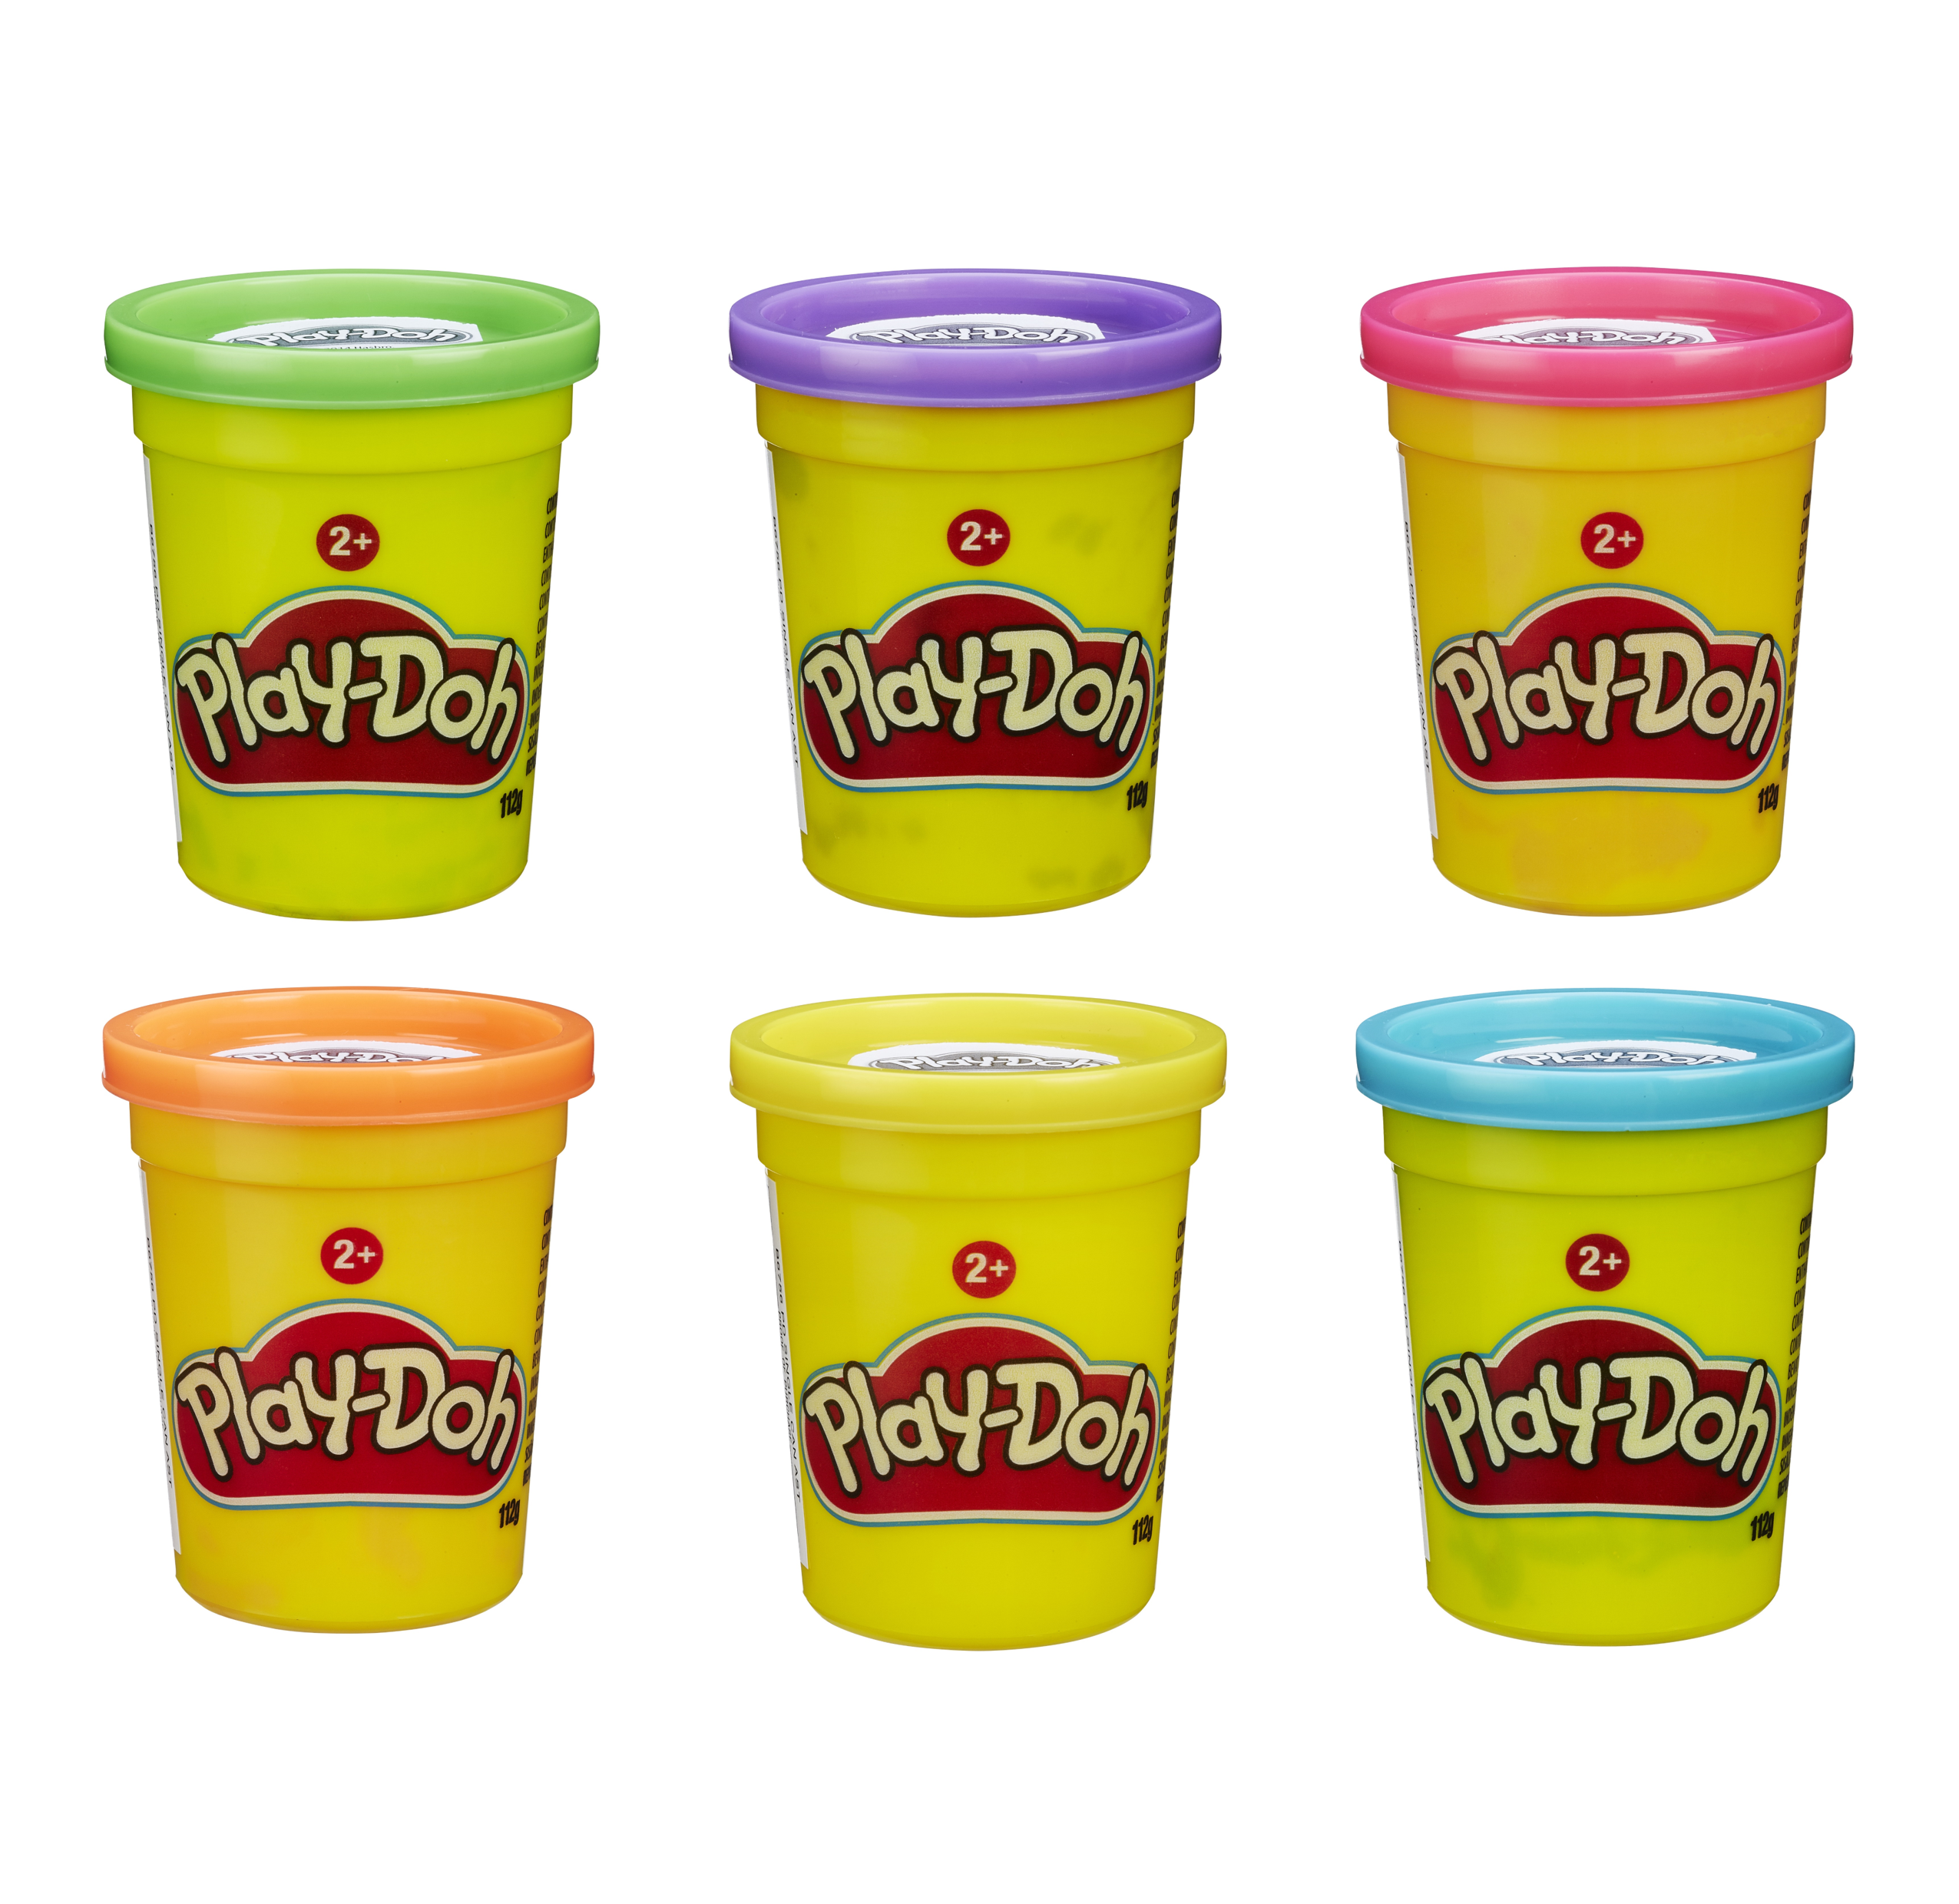 Play-doh - vasetto singolo, vasetto di pasta da modellare atossica - PLAY-DOH